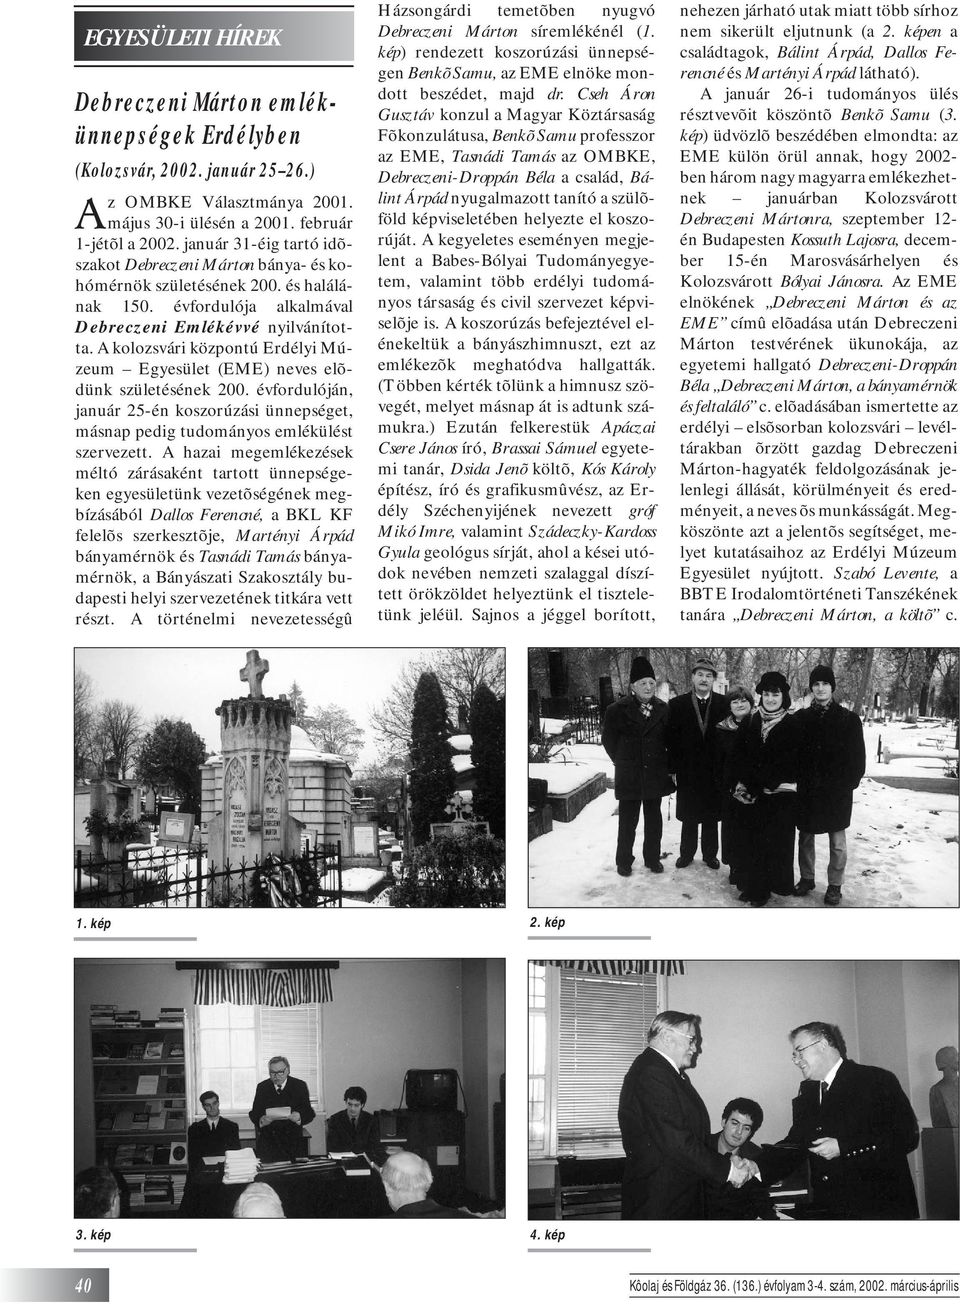 A kolozsvári központú Erdélyi Múzeum Egyesület (EME) neves elõdünk születésének 200. évfordulóján, január 25-én koszorúzási ünnepséget, másnap pedig tudományos emlékülést szervezett.